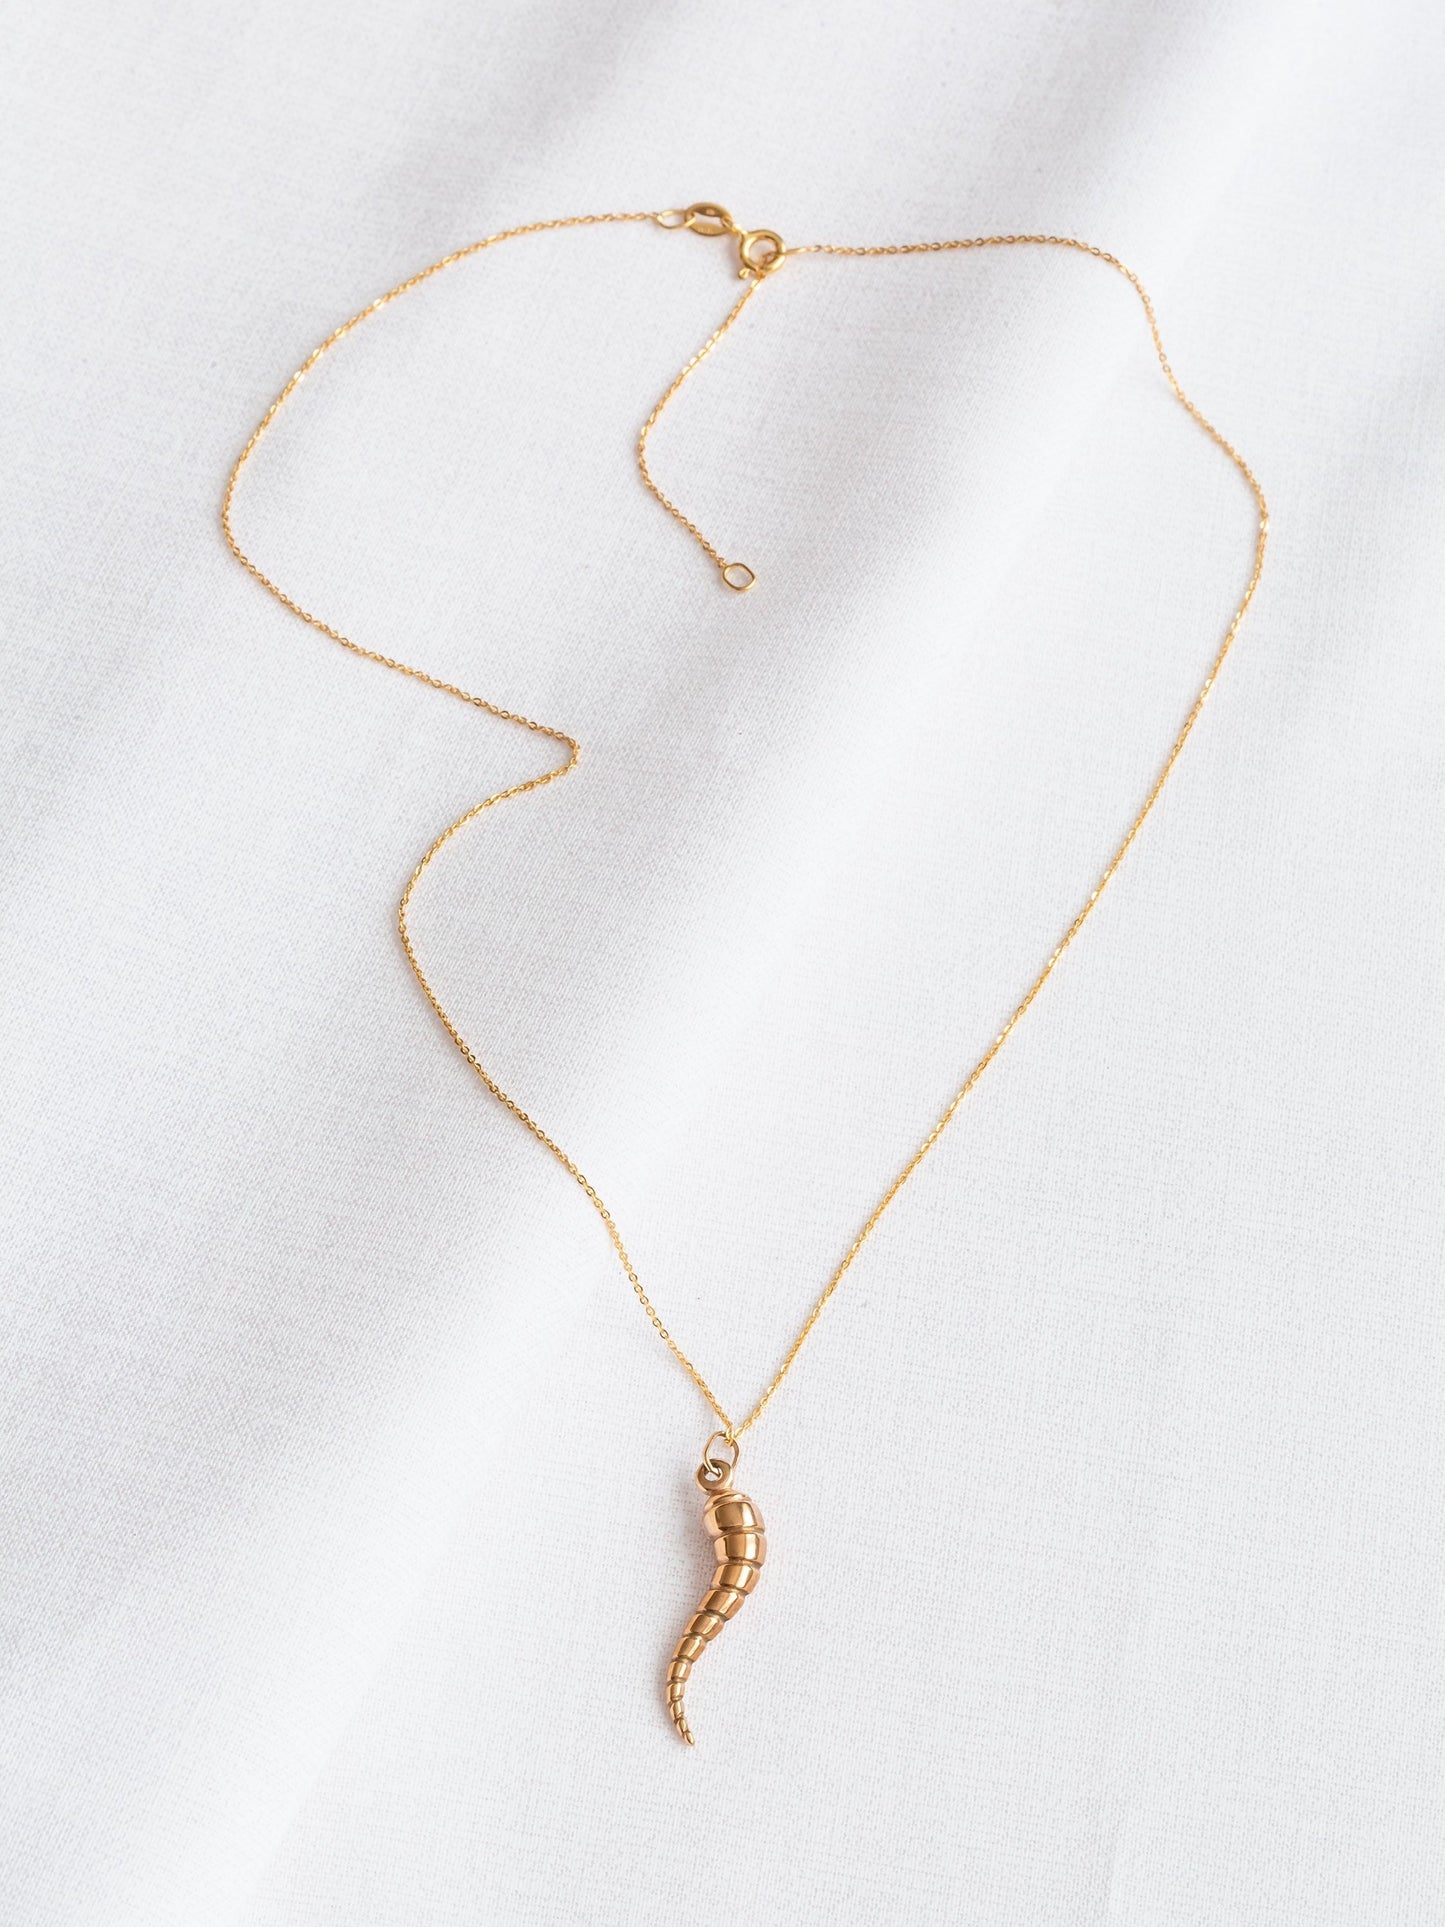 Vintage 9ct Gold Horn of Plenty Necklace